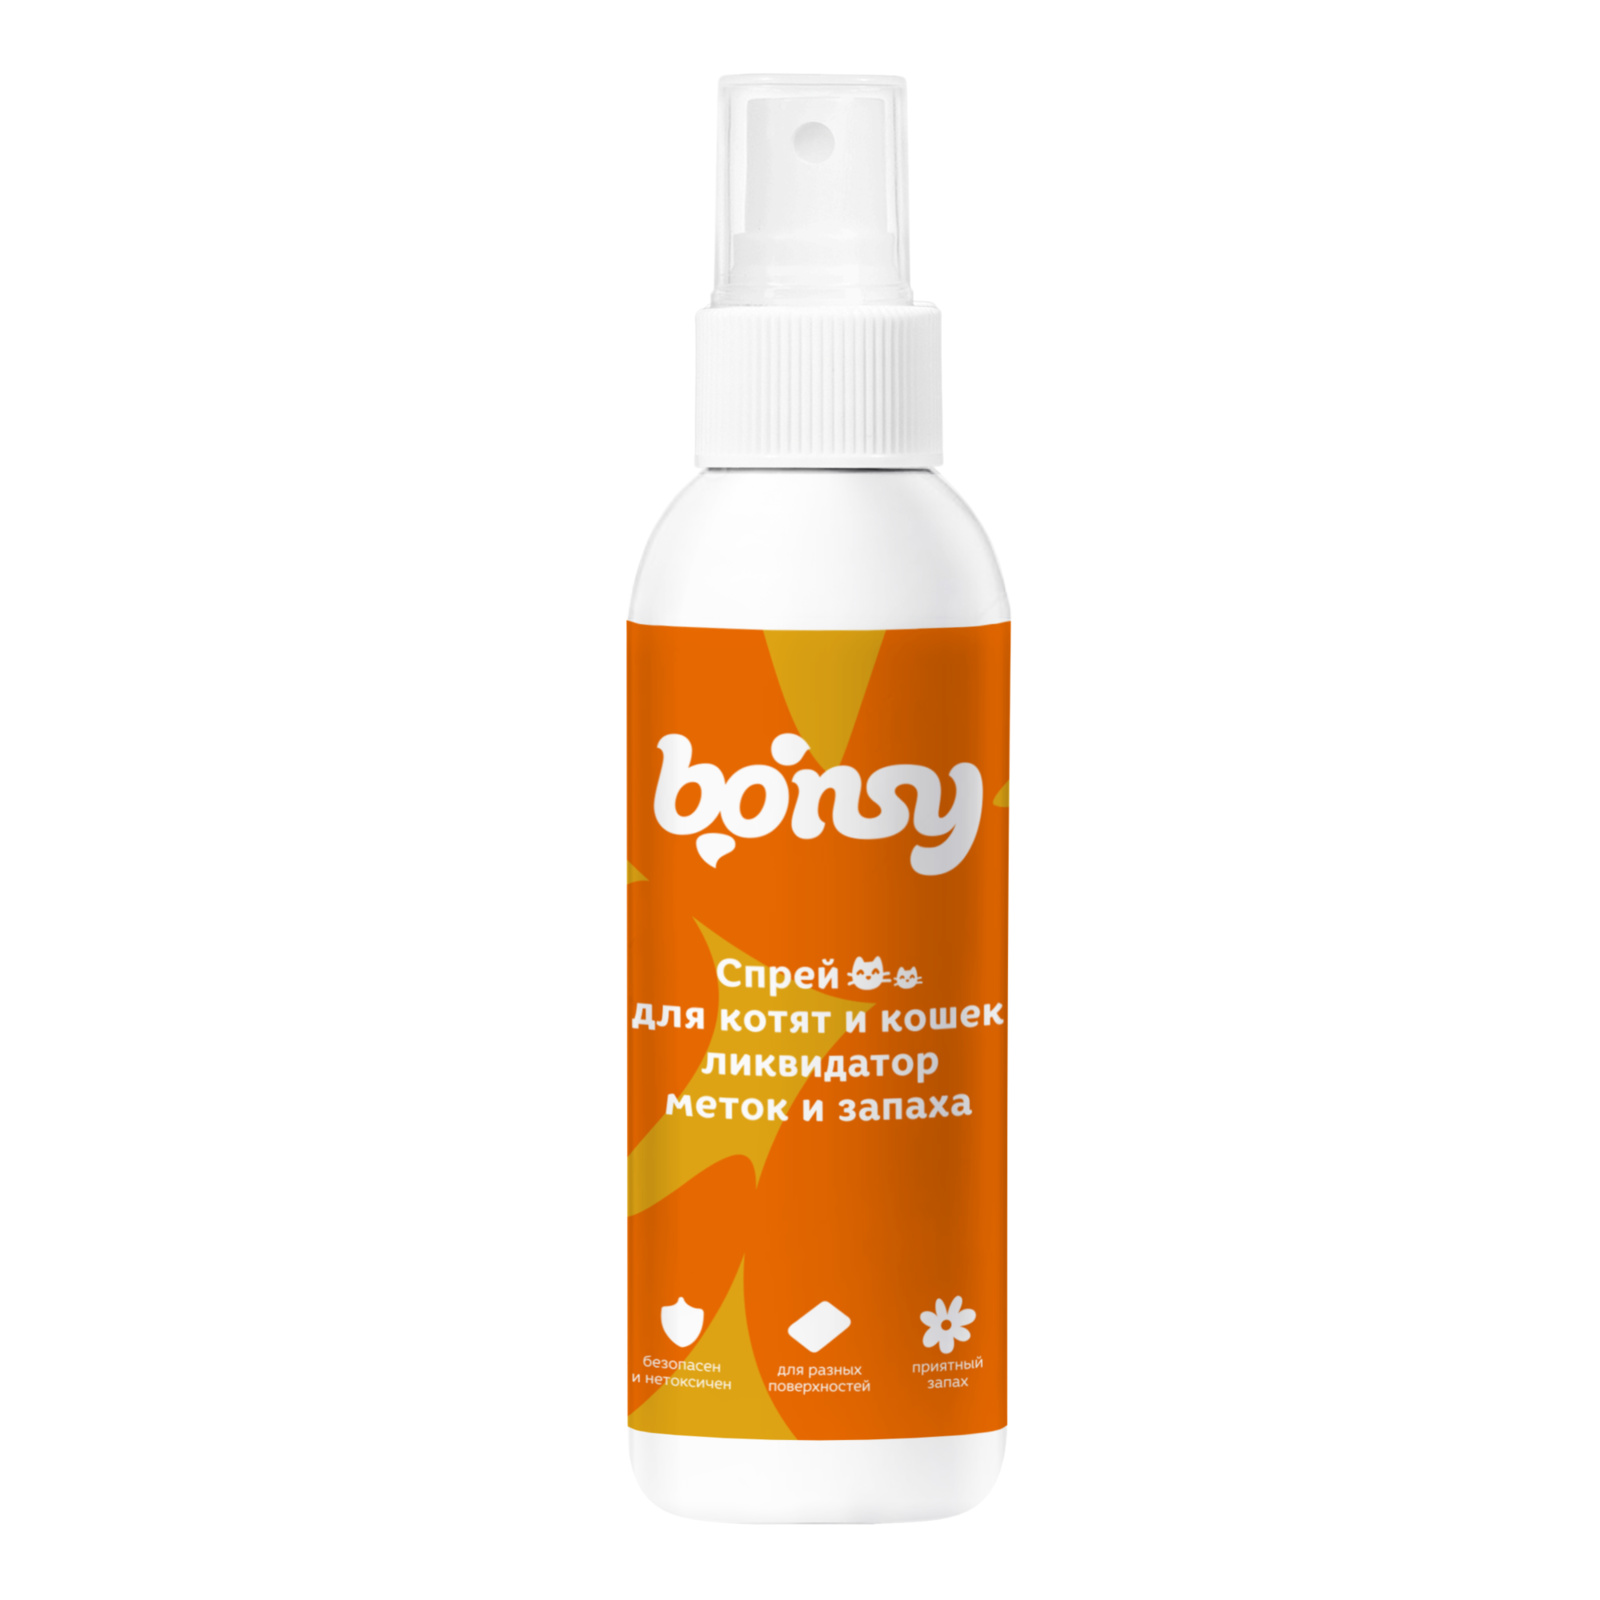 Bonsy Bonsy спрей «Ликвидатор меток и запаха» для кошек и котят (150 г)